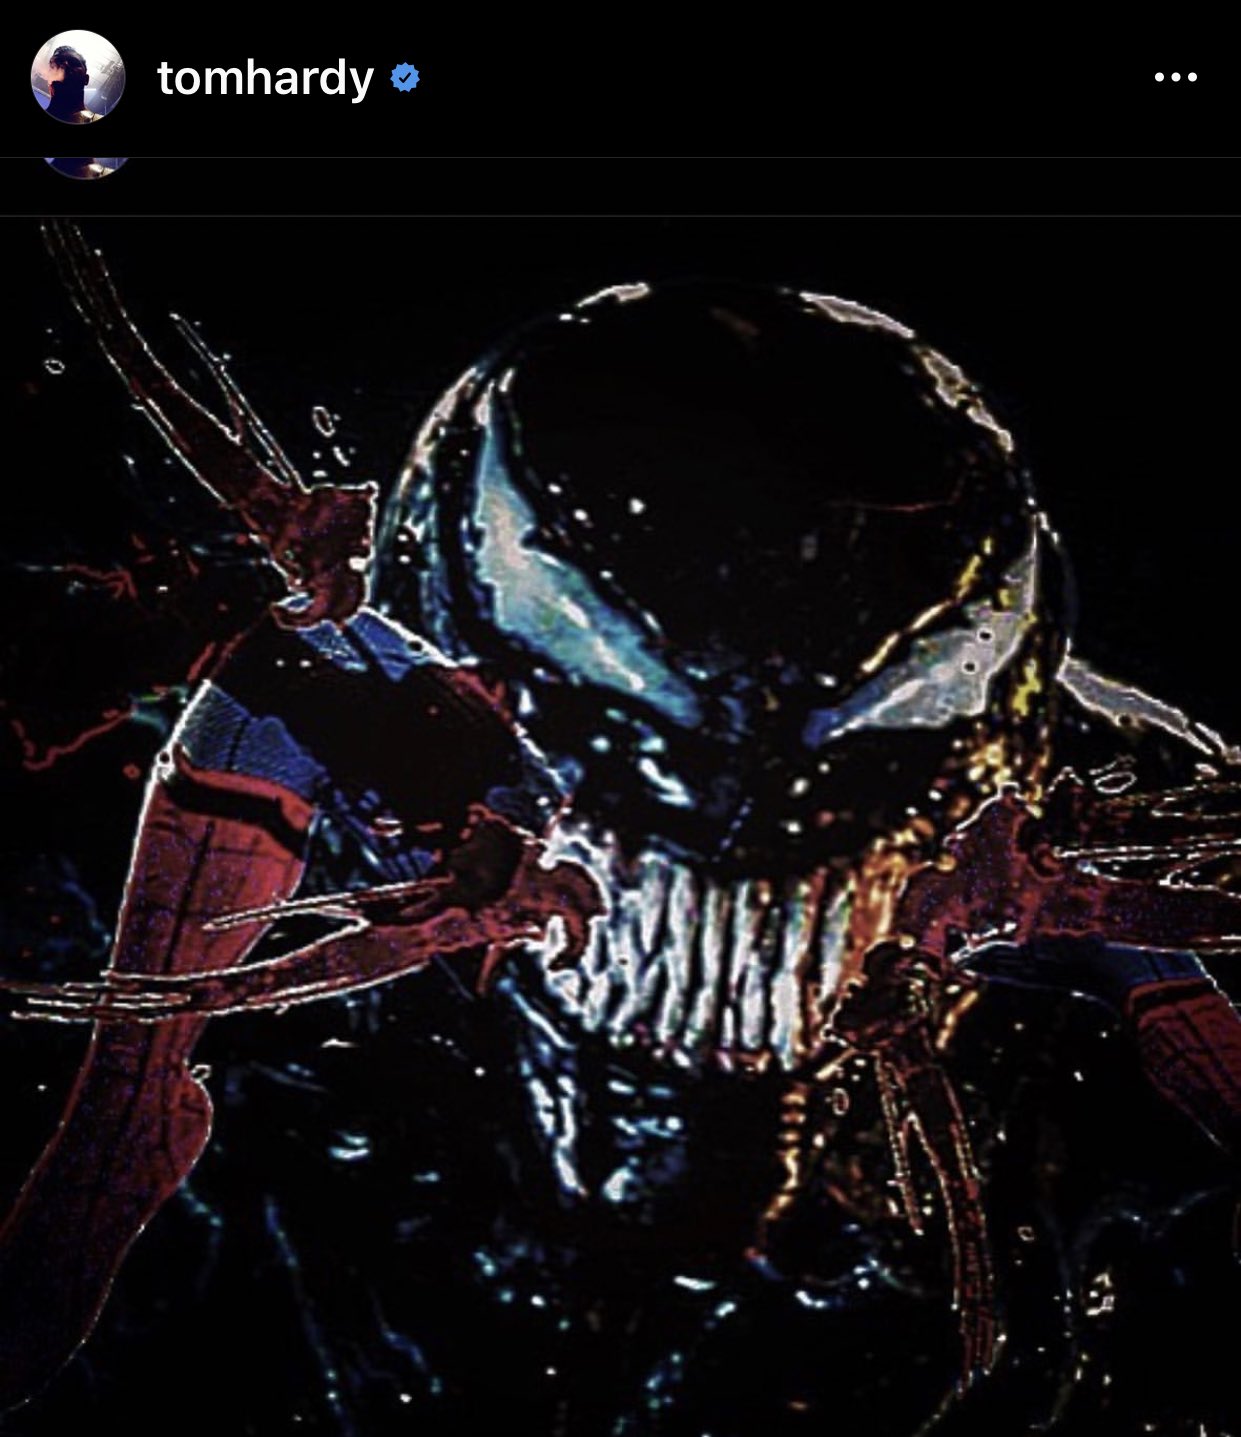 Chiêm ngưỡng bộ ảnh Venom theo phong cách kinh dị đáng sợ nhưng cũng vô  cùng đã mắt